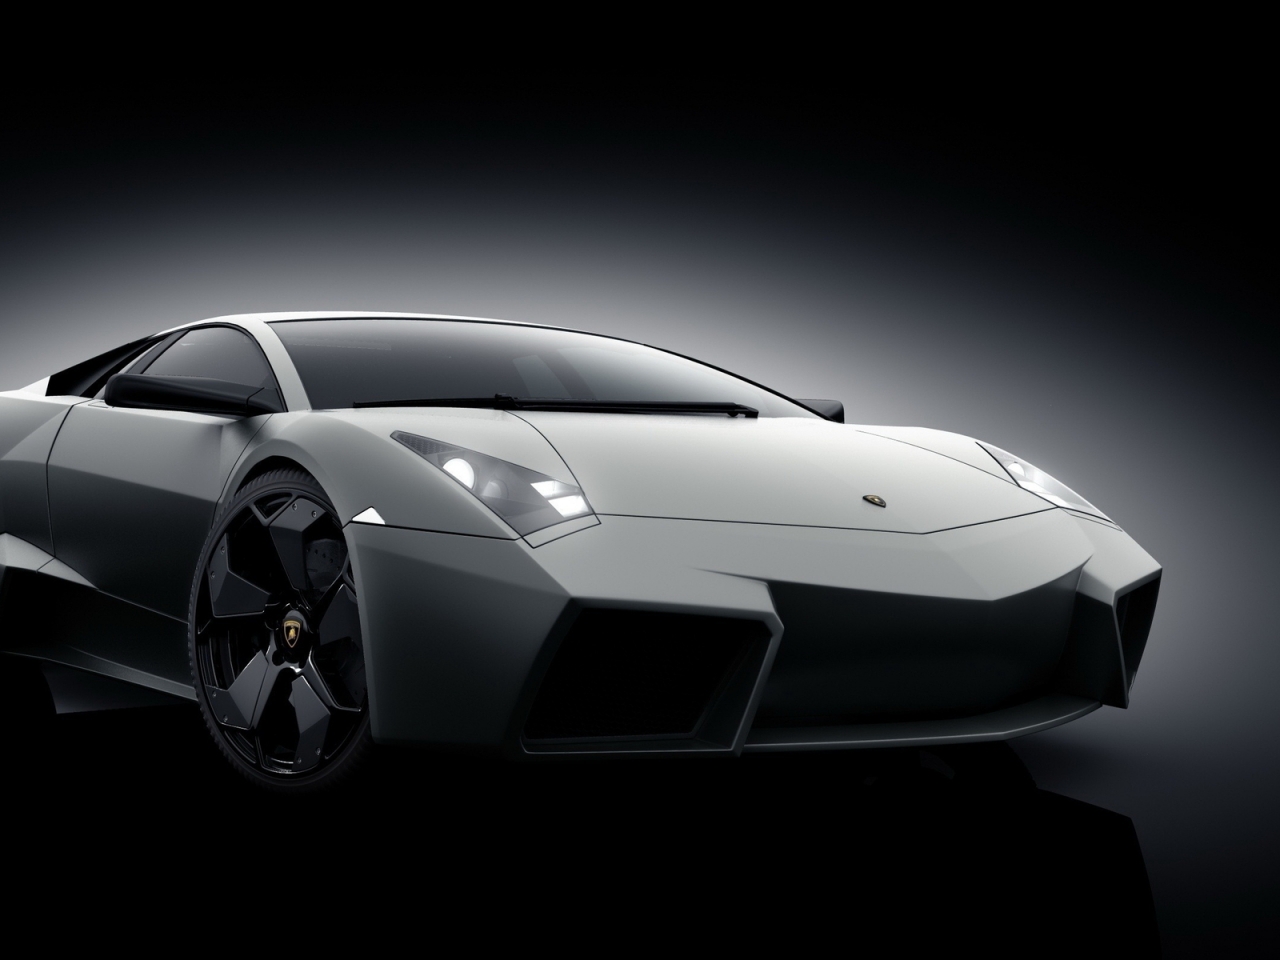 Grey Lamborghini Reventon for 1280 x 960 resolution